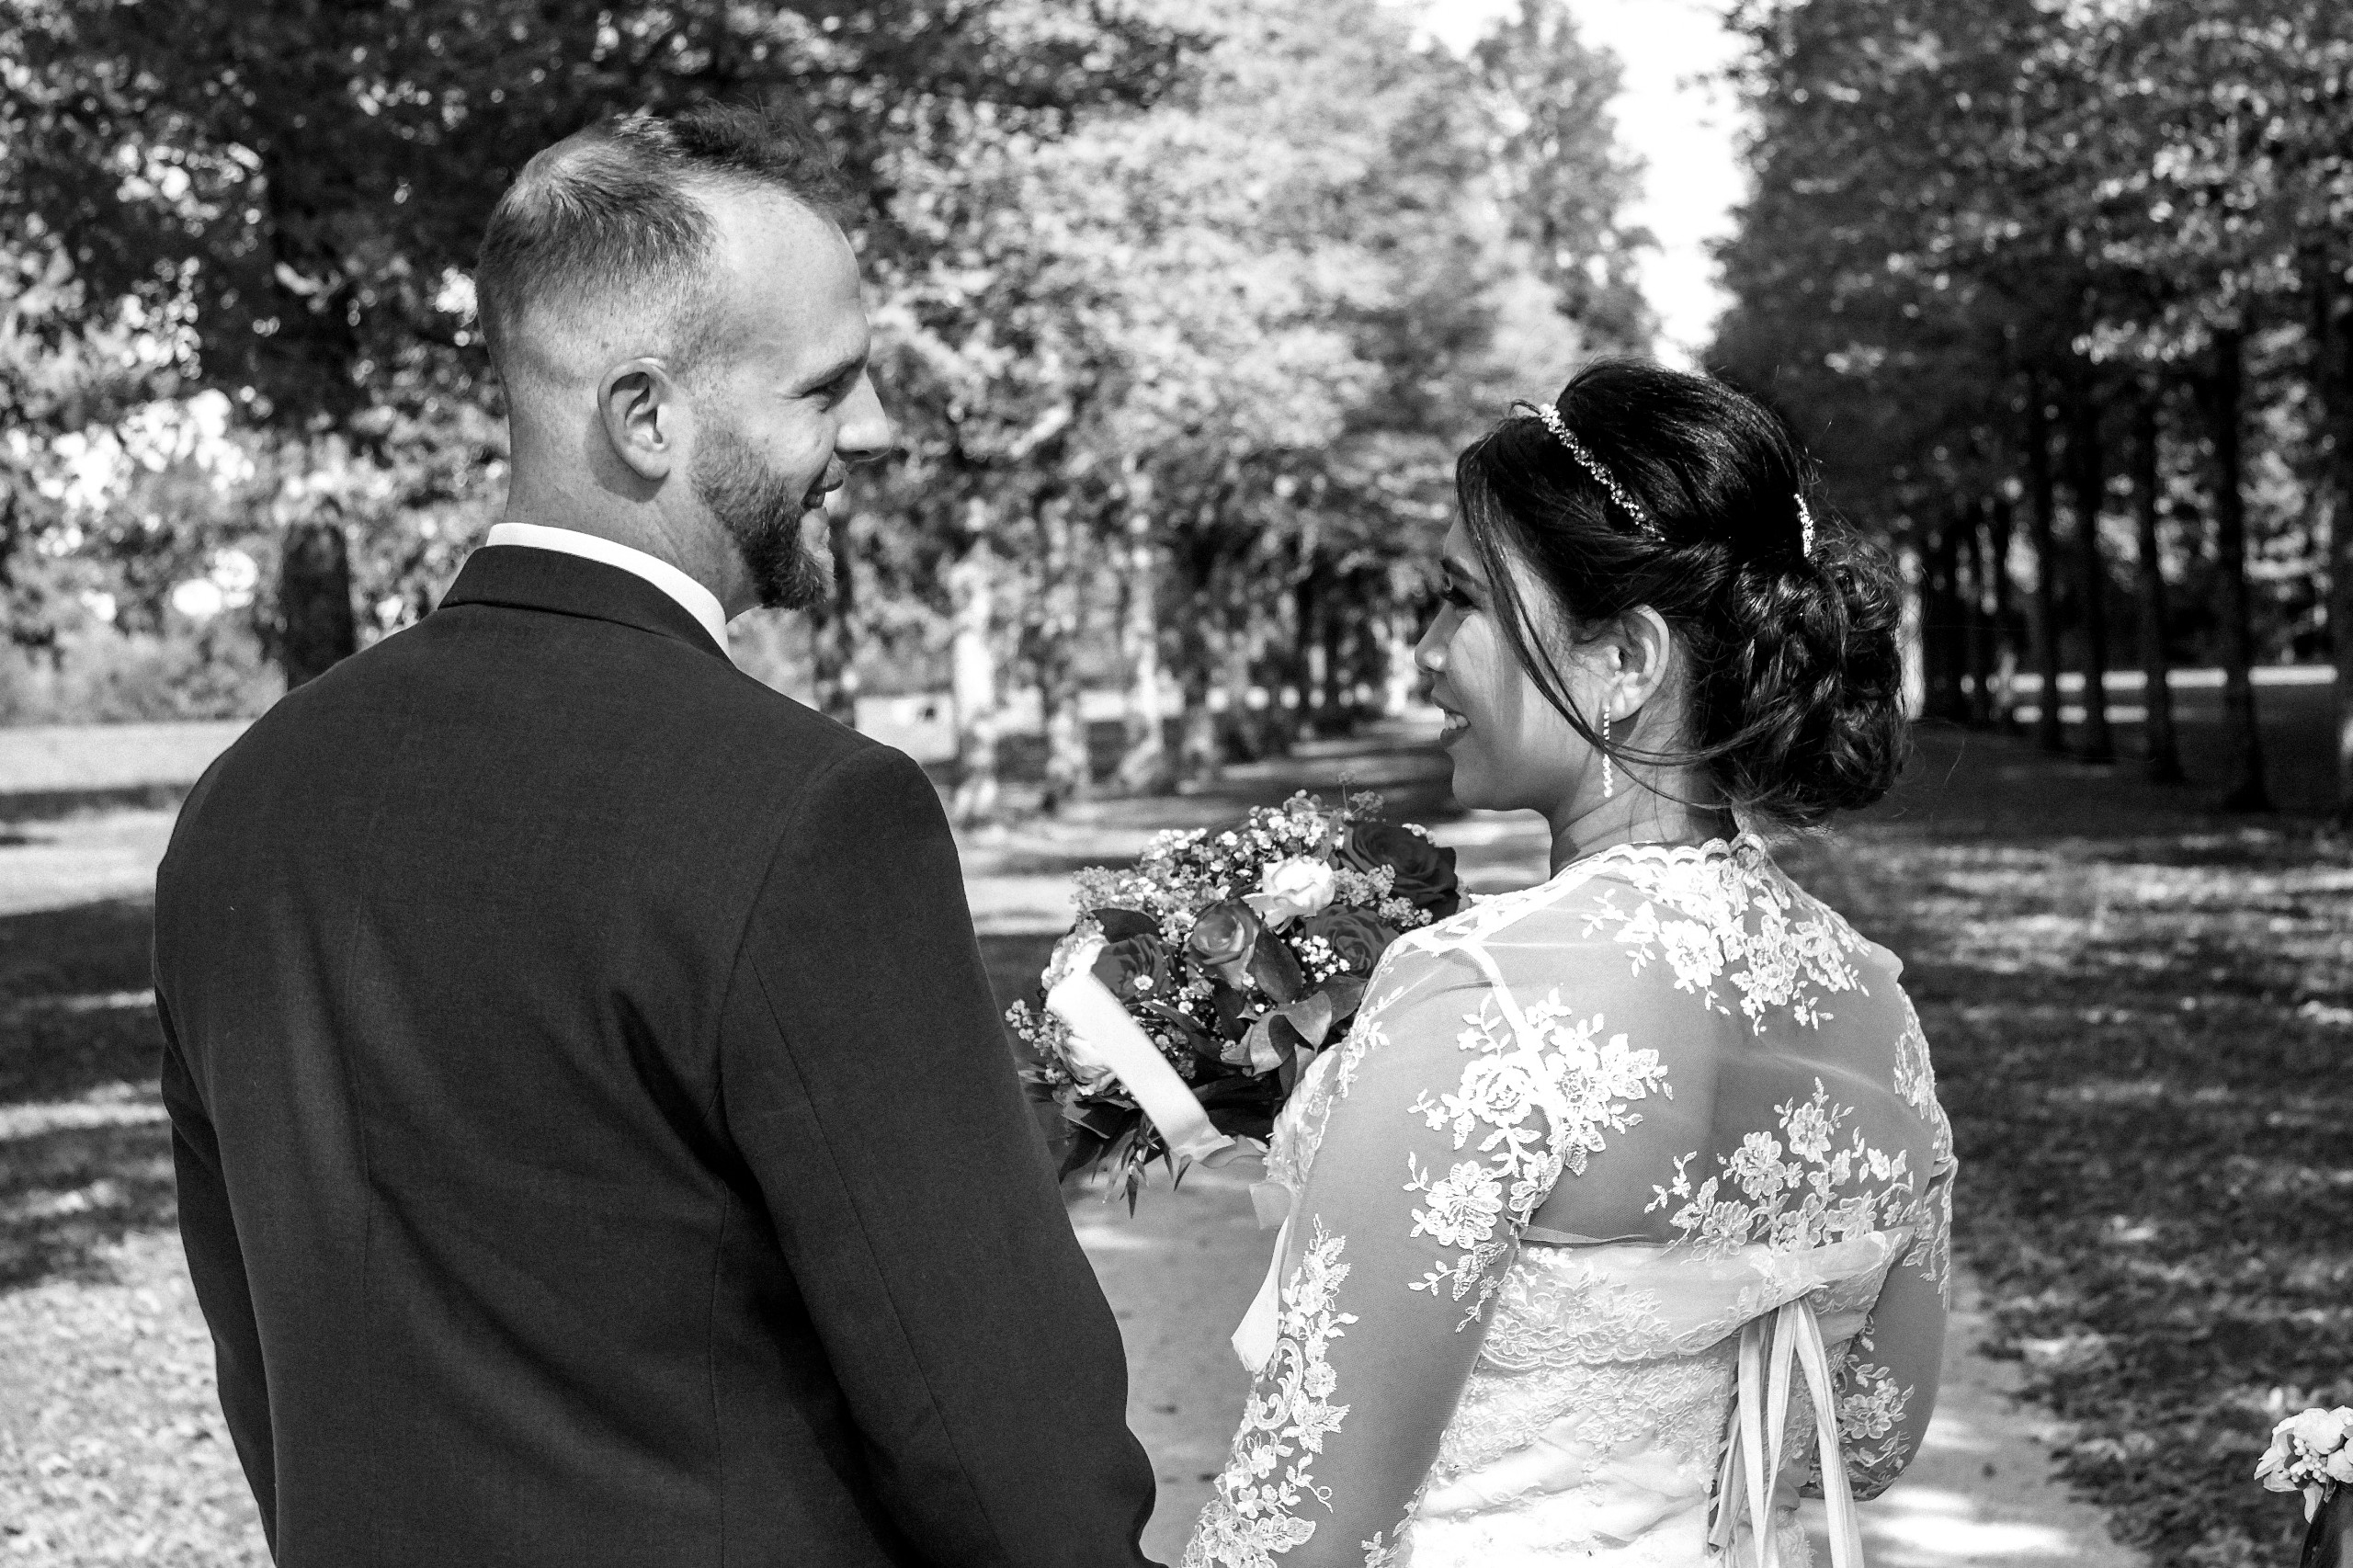 Hochzeitsfotograf im Gro&szlig;raum Heilbronn. Ich schaffe als Fotograf Ihrer Hochzeit emotionale, preiswerte Fotografie, bereits ab 280 &euro;